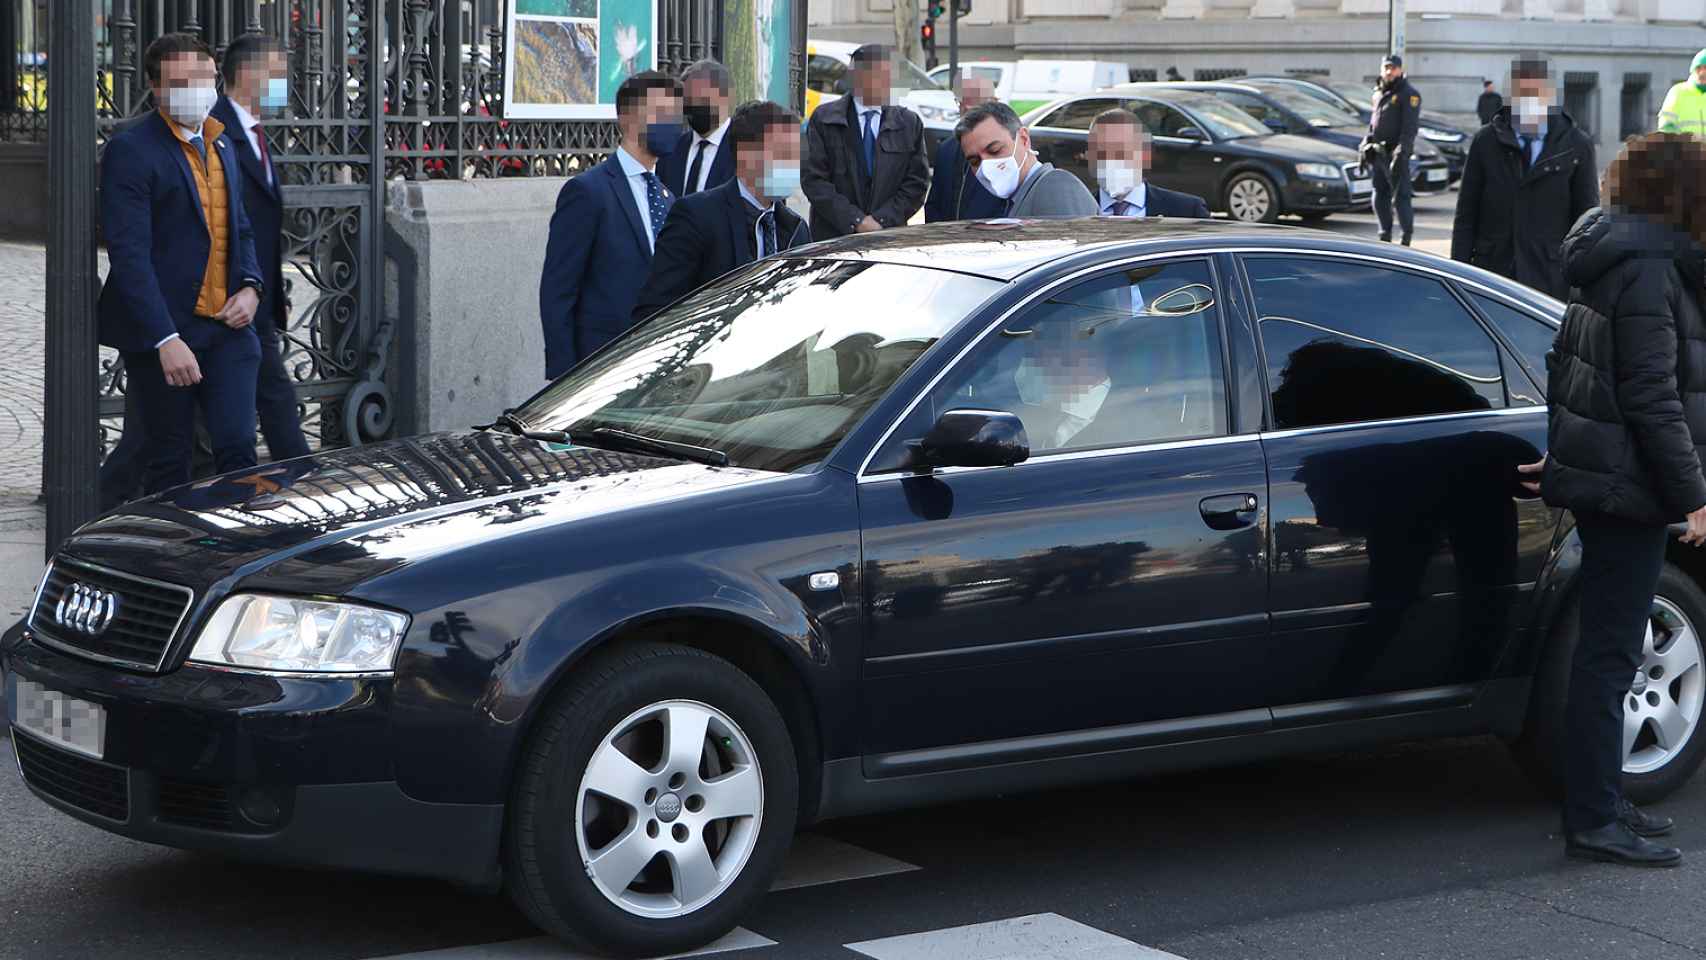 Pedro Sánchez subiéndose al coche oficial.